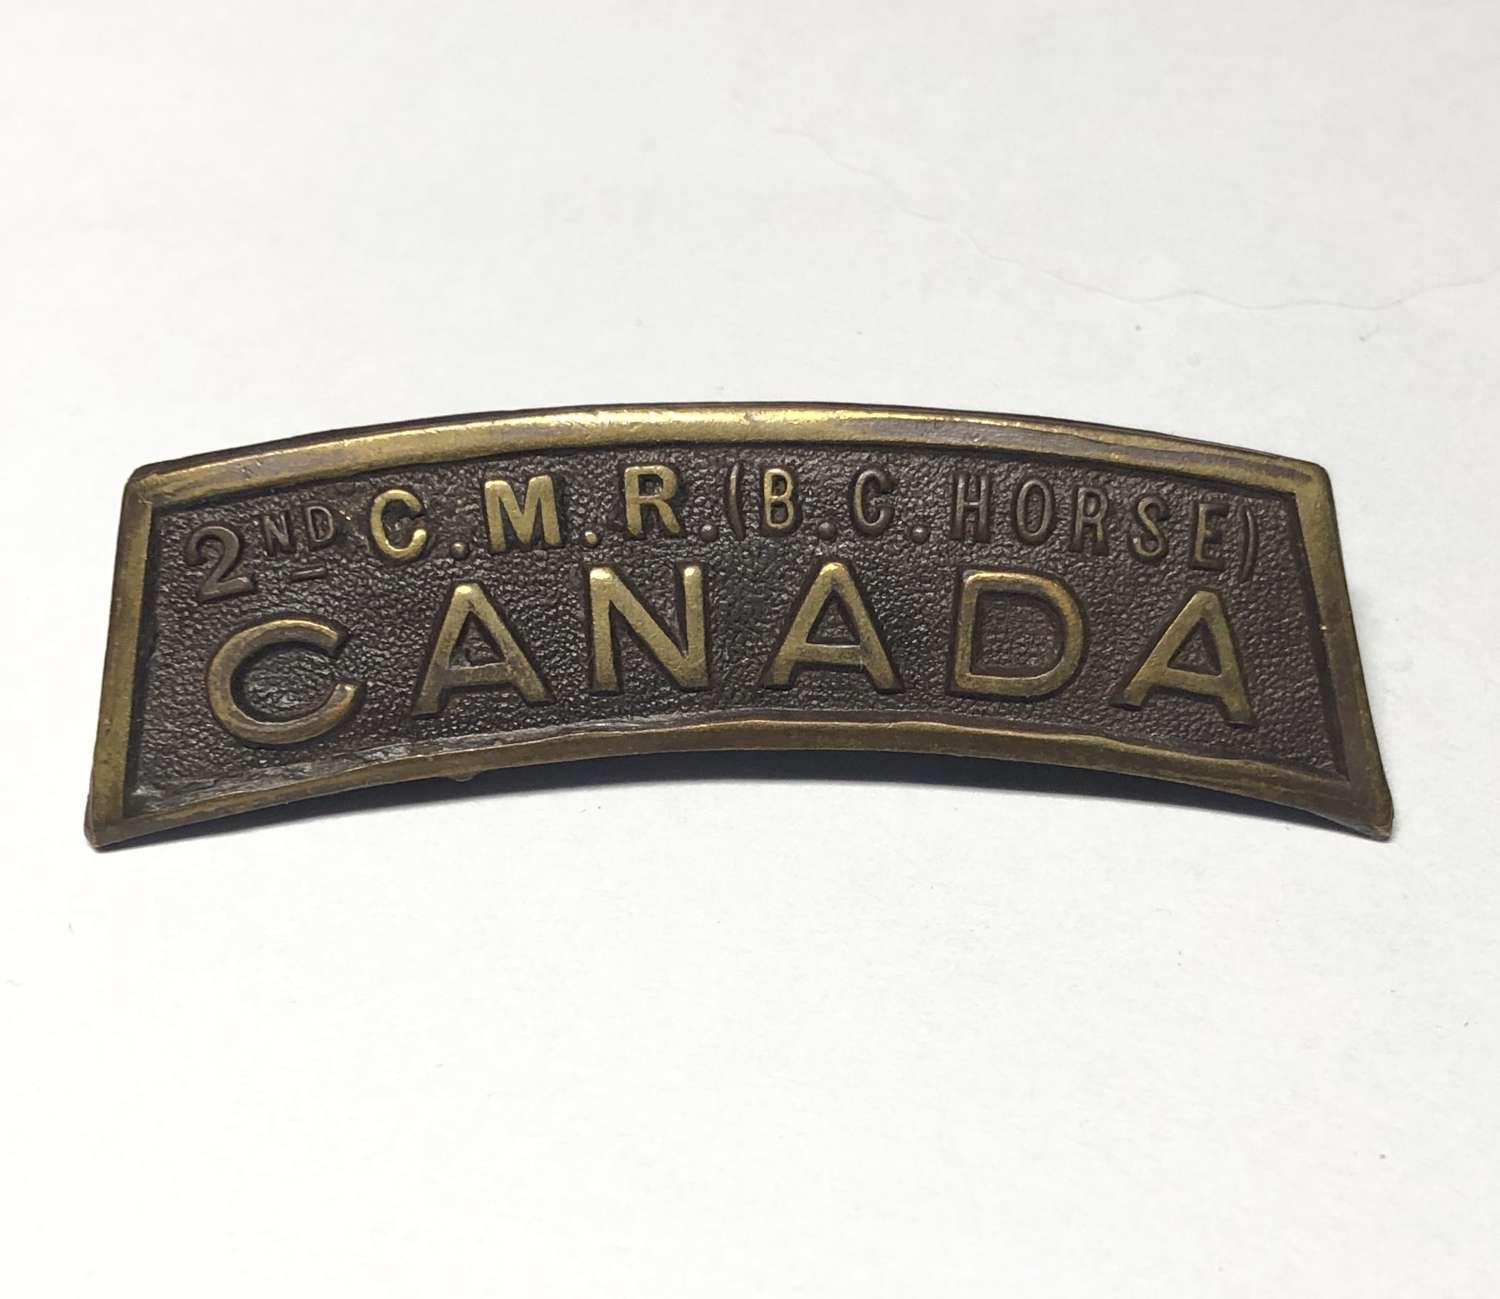 Canada. 2nd C.M.R. (B.C HORSE) CANADA WW1 CEF shoulder title